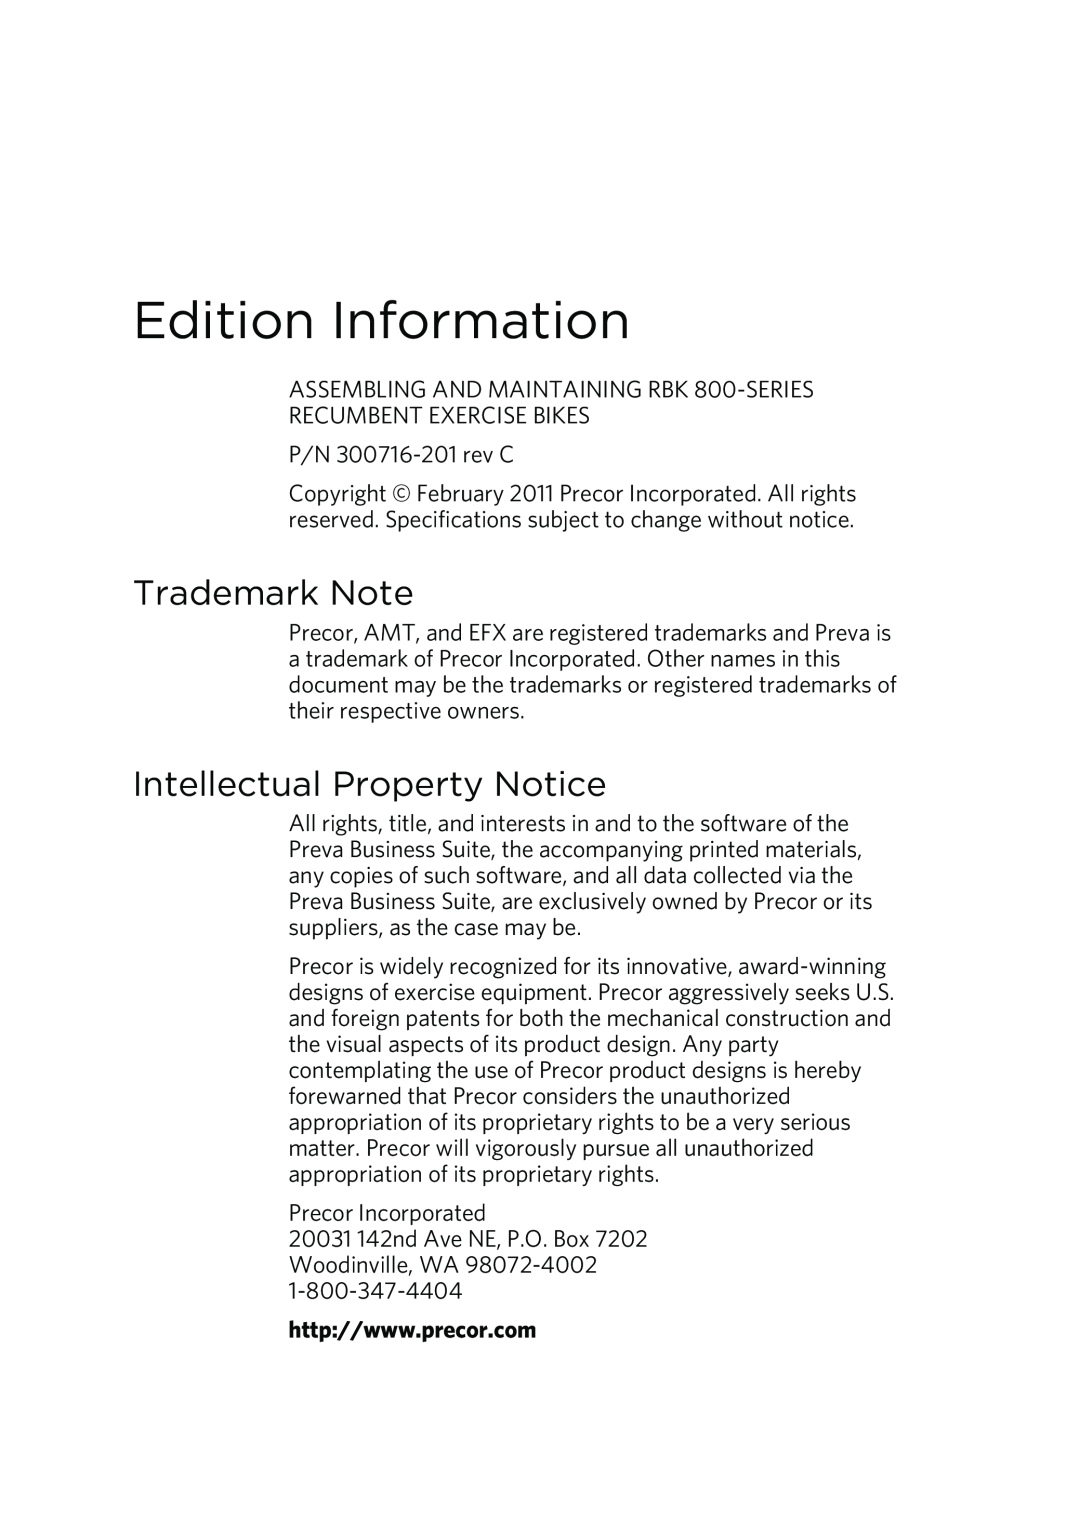 Precor P80 manual Edition Information, Trademark Note, Intellectual Property Notice, P/N 300716-201rev C 